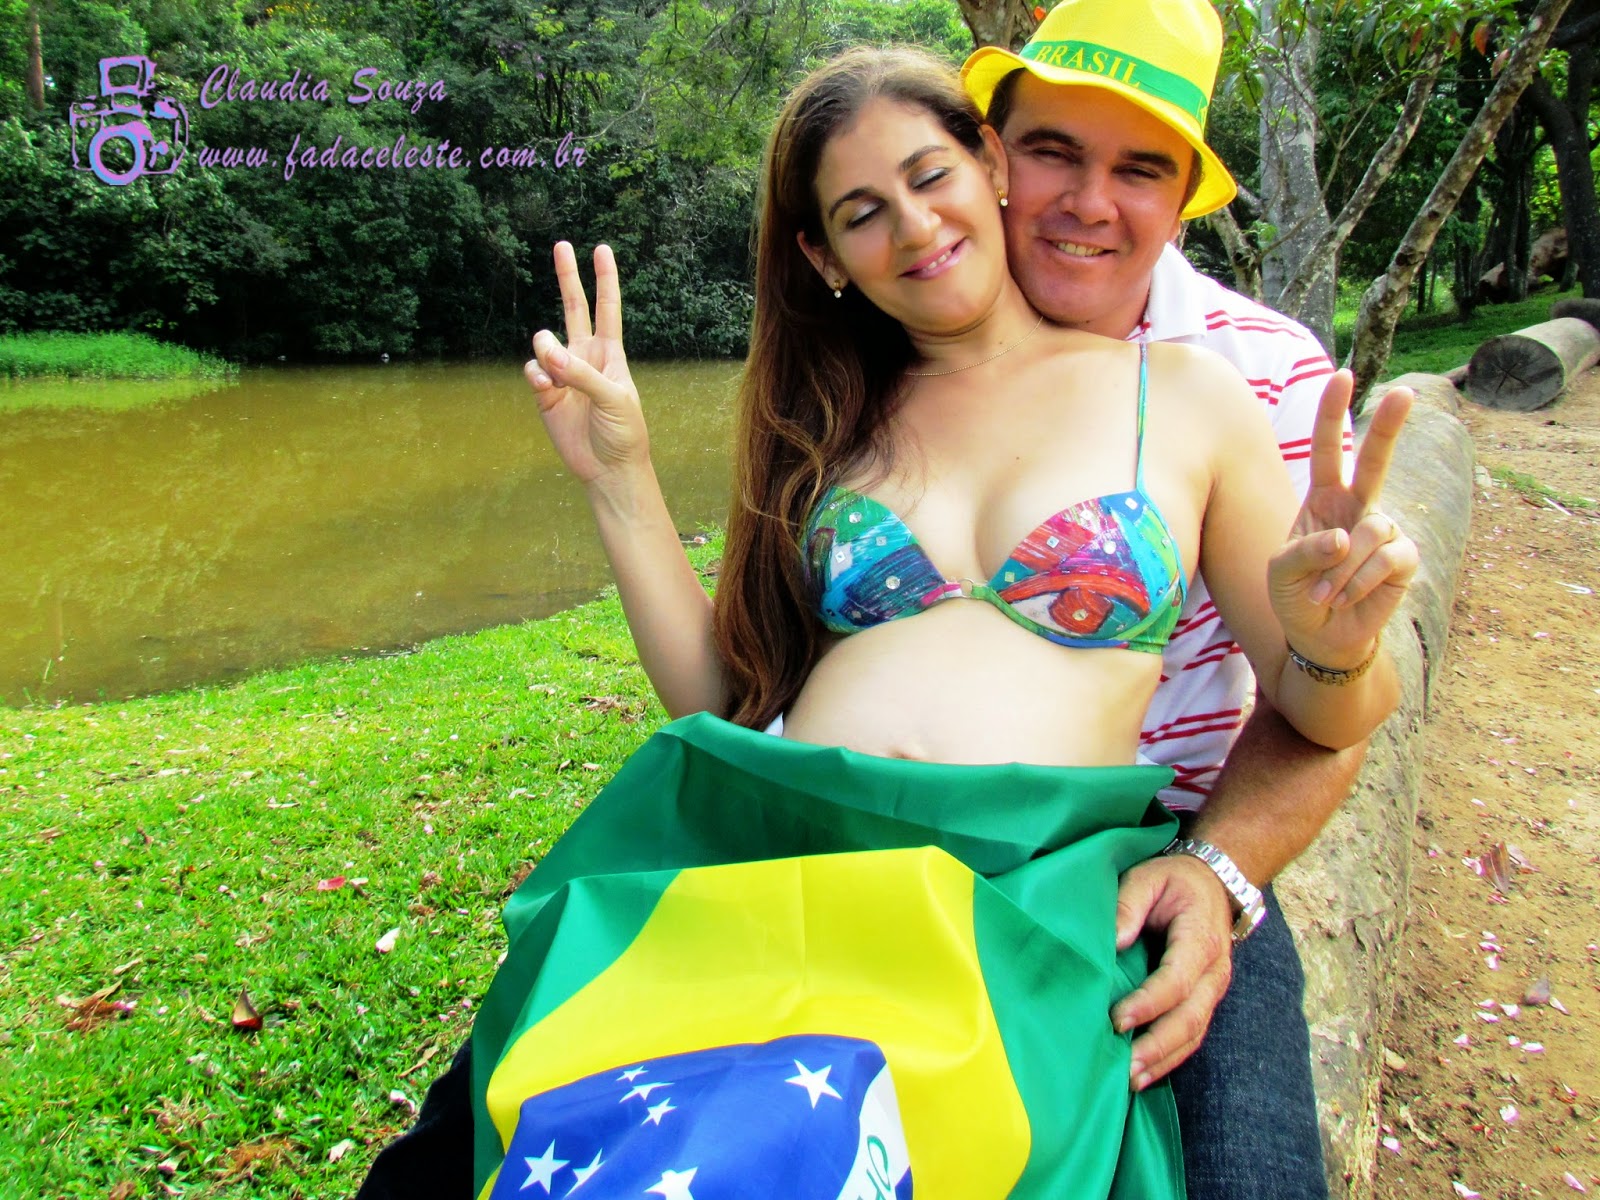 Ensaio Fotográfico de gestantes Adelita e Jean - Produção: Claudia Souza / Fada Celeste